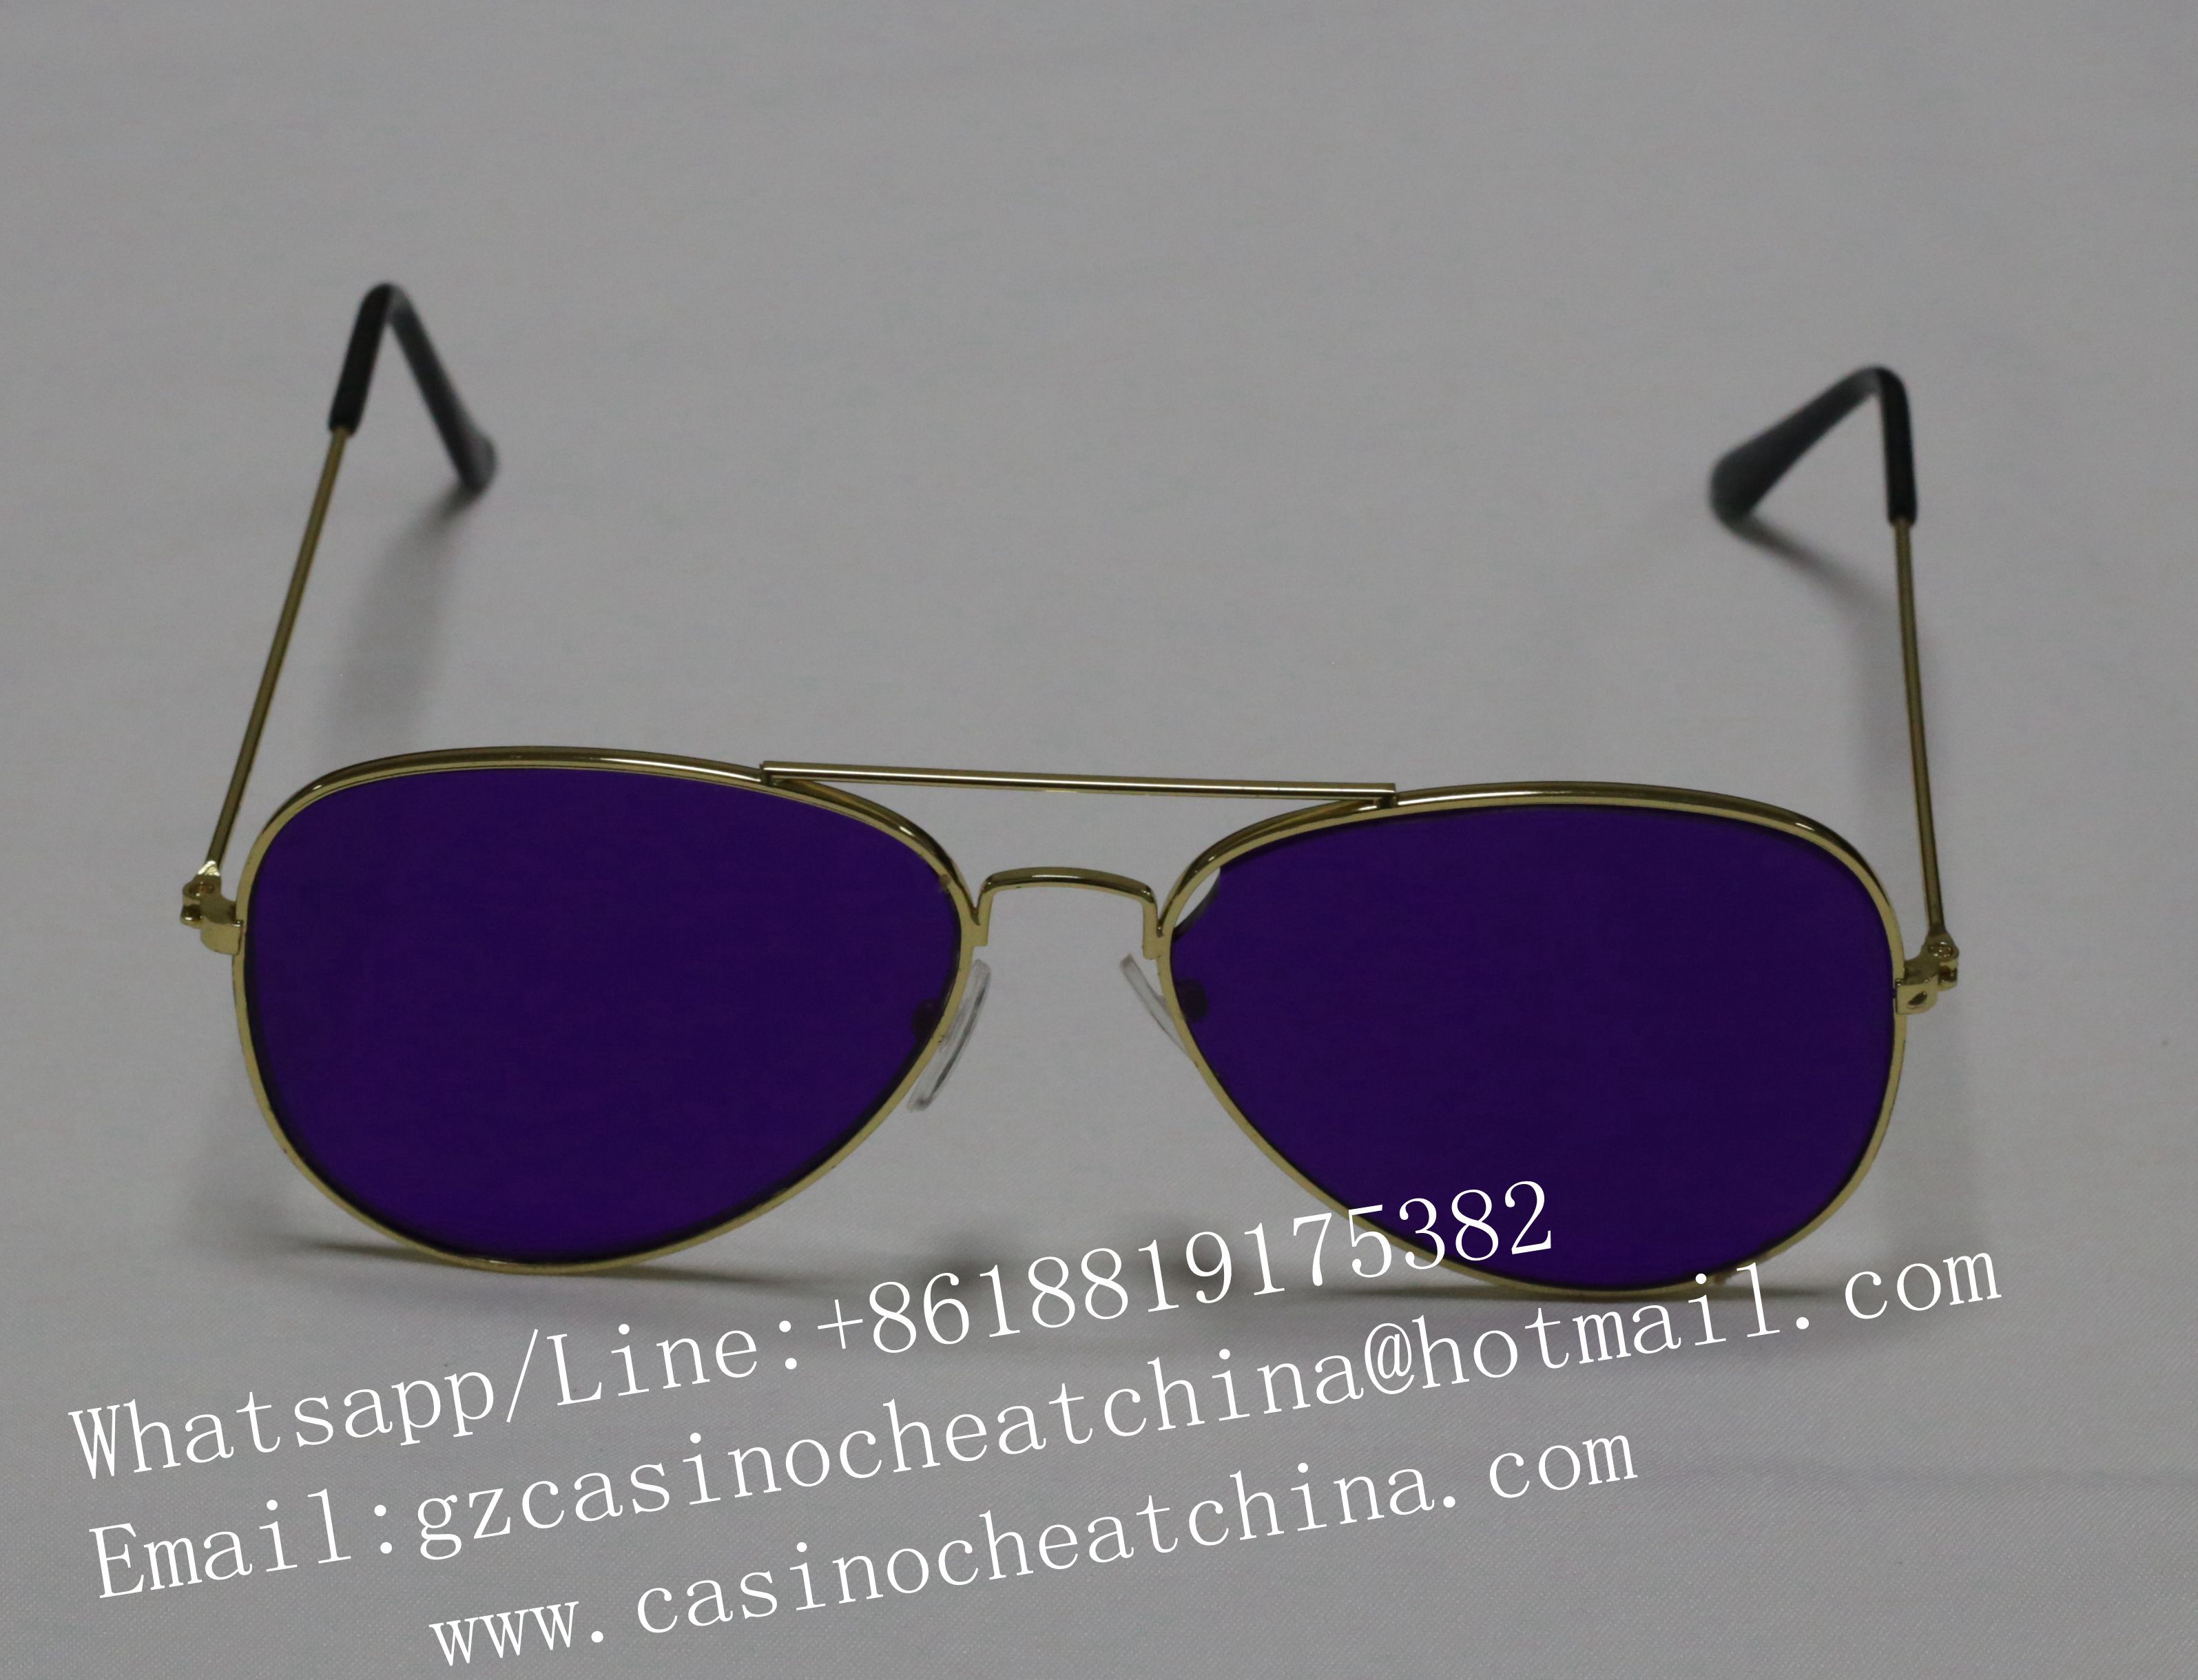 2017 Новые очки для очков с ультрафиолетовым излучением для азартных игр чит / светящиеся карты Sunglasses / Gambling Cheaters Sunglasses / casino cheat